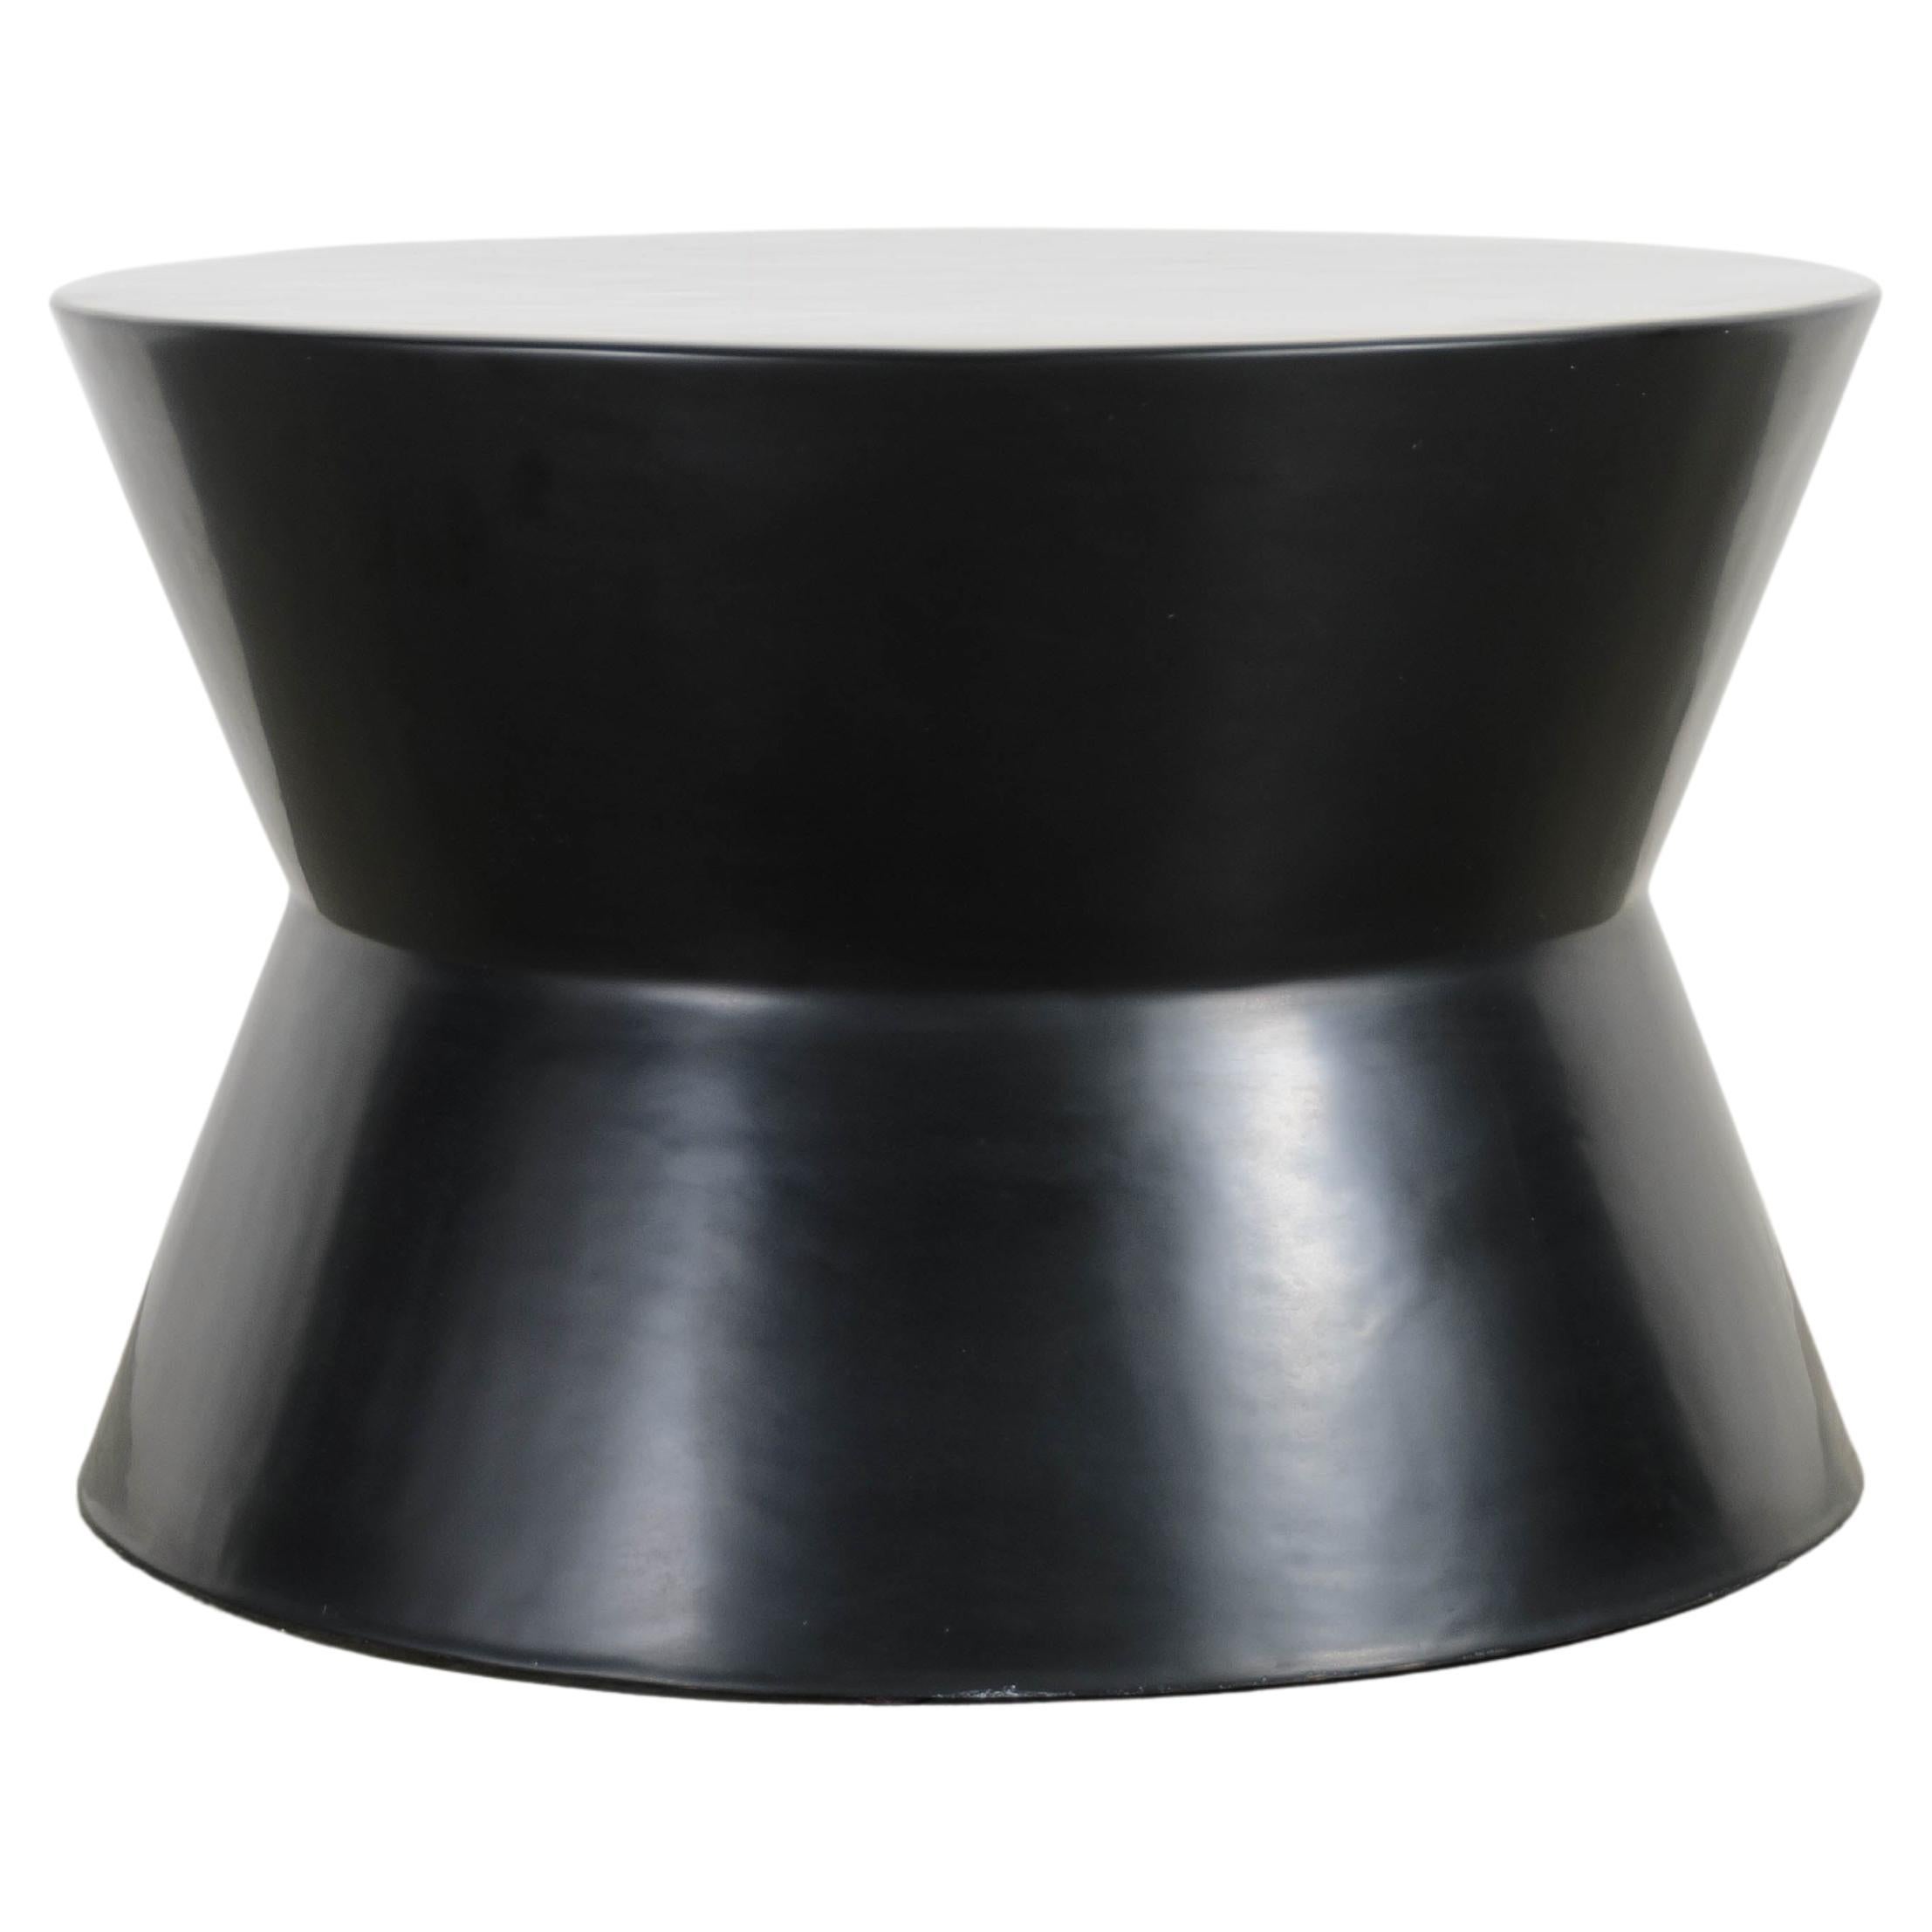 Tabouret de tambour contemporain en laque noire à la taille de Robert Kuo, édition limitée